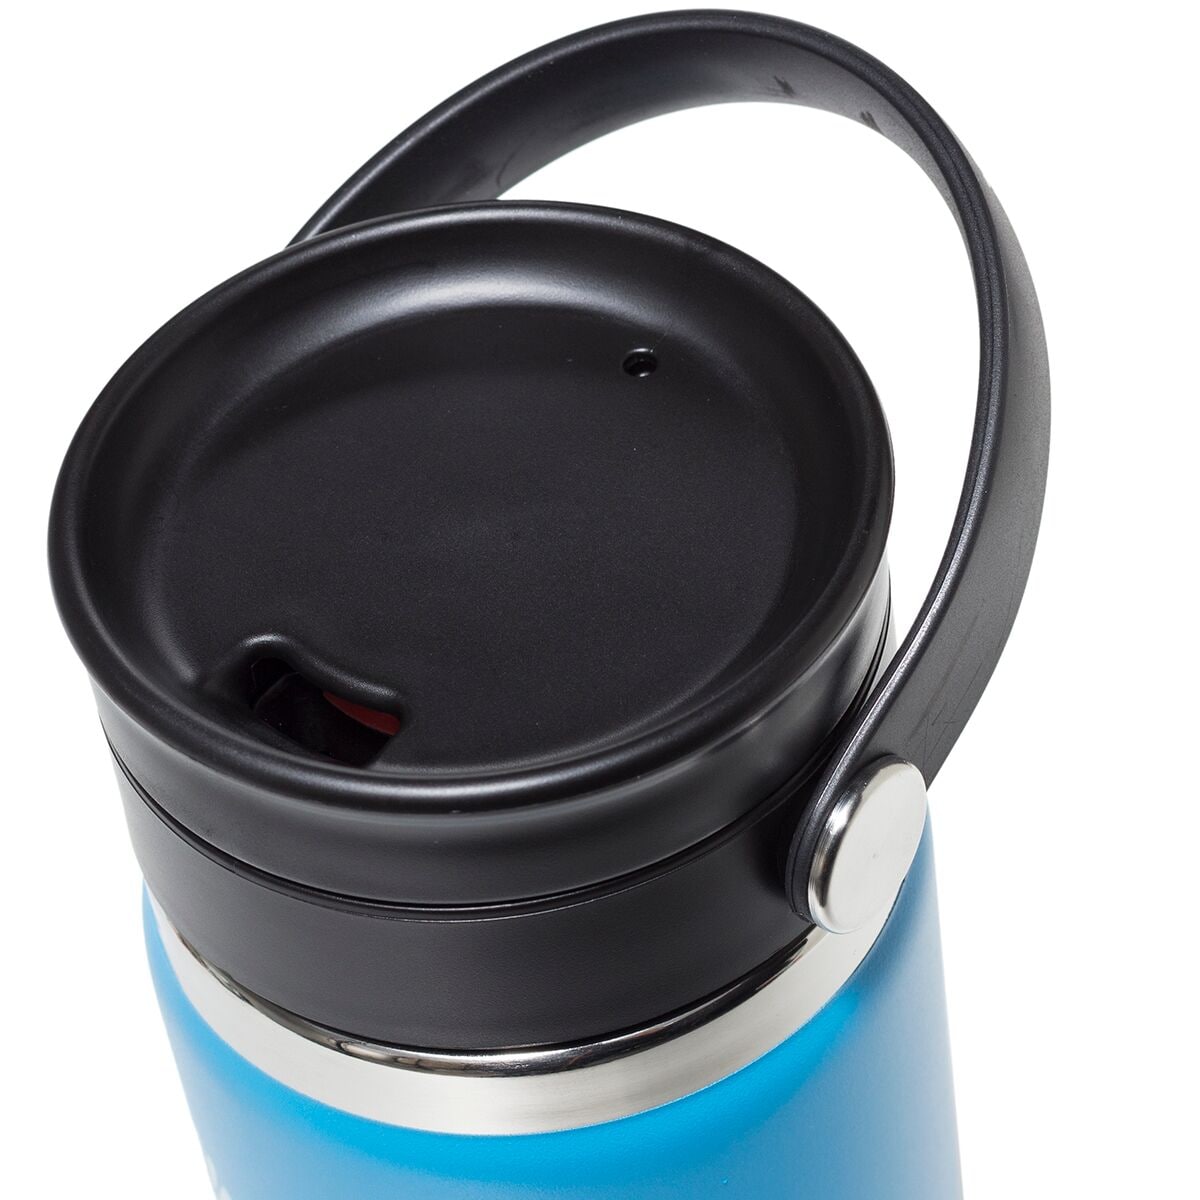 Hydro Flask Coffee Mug with Flex Sip Lid - NZ Raw